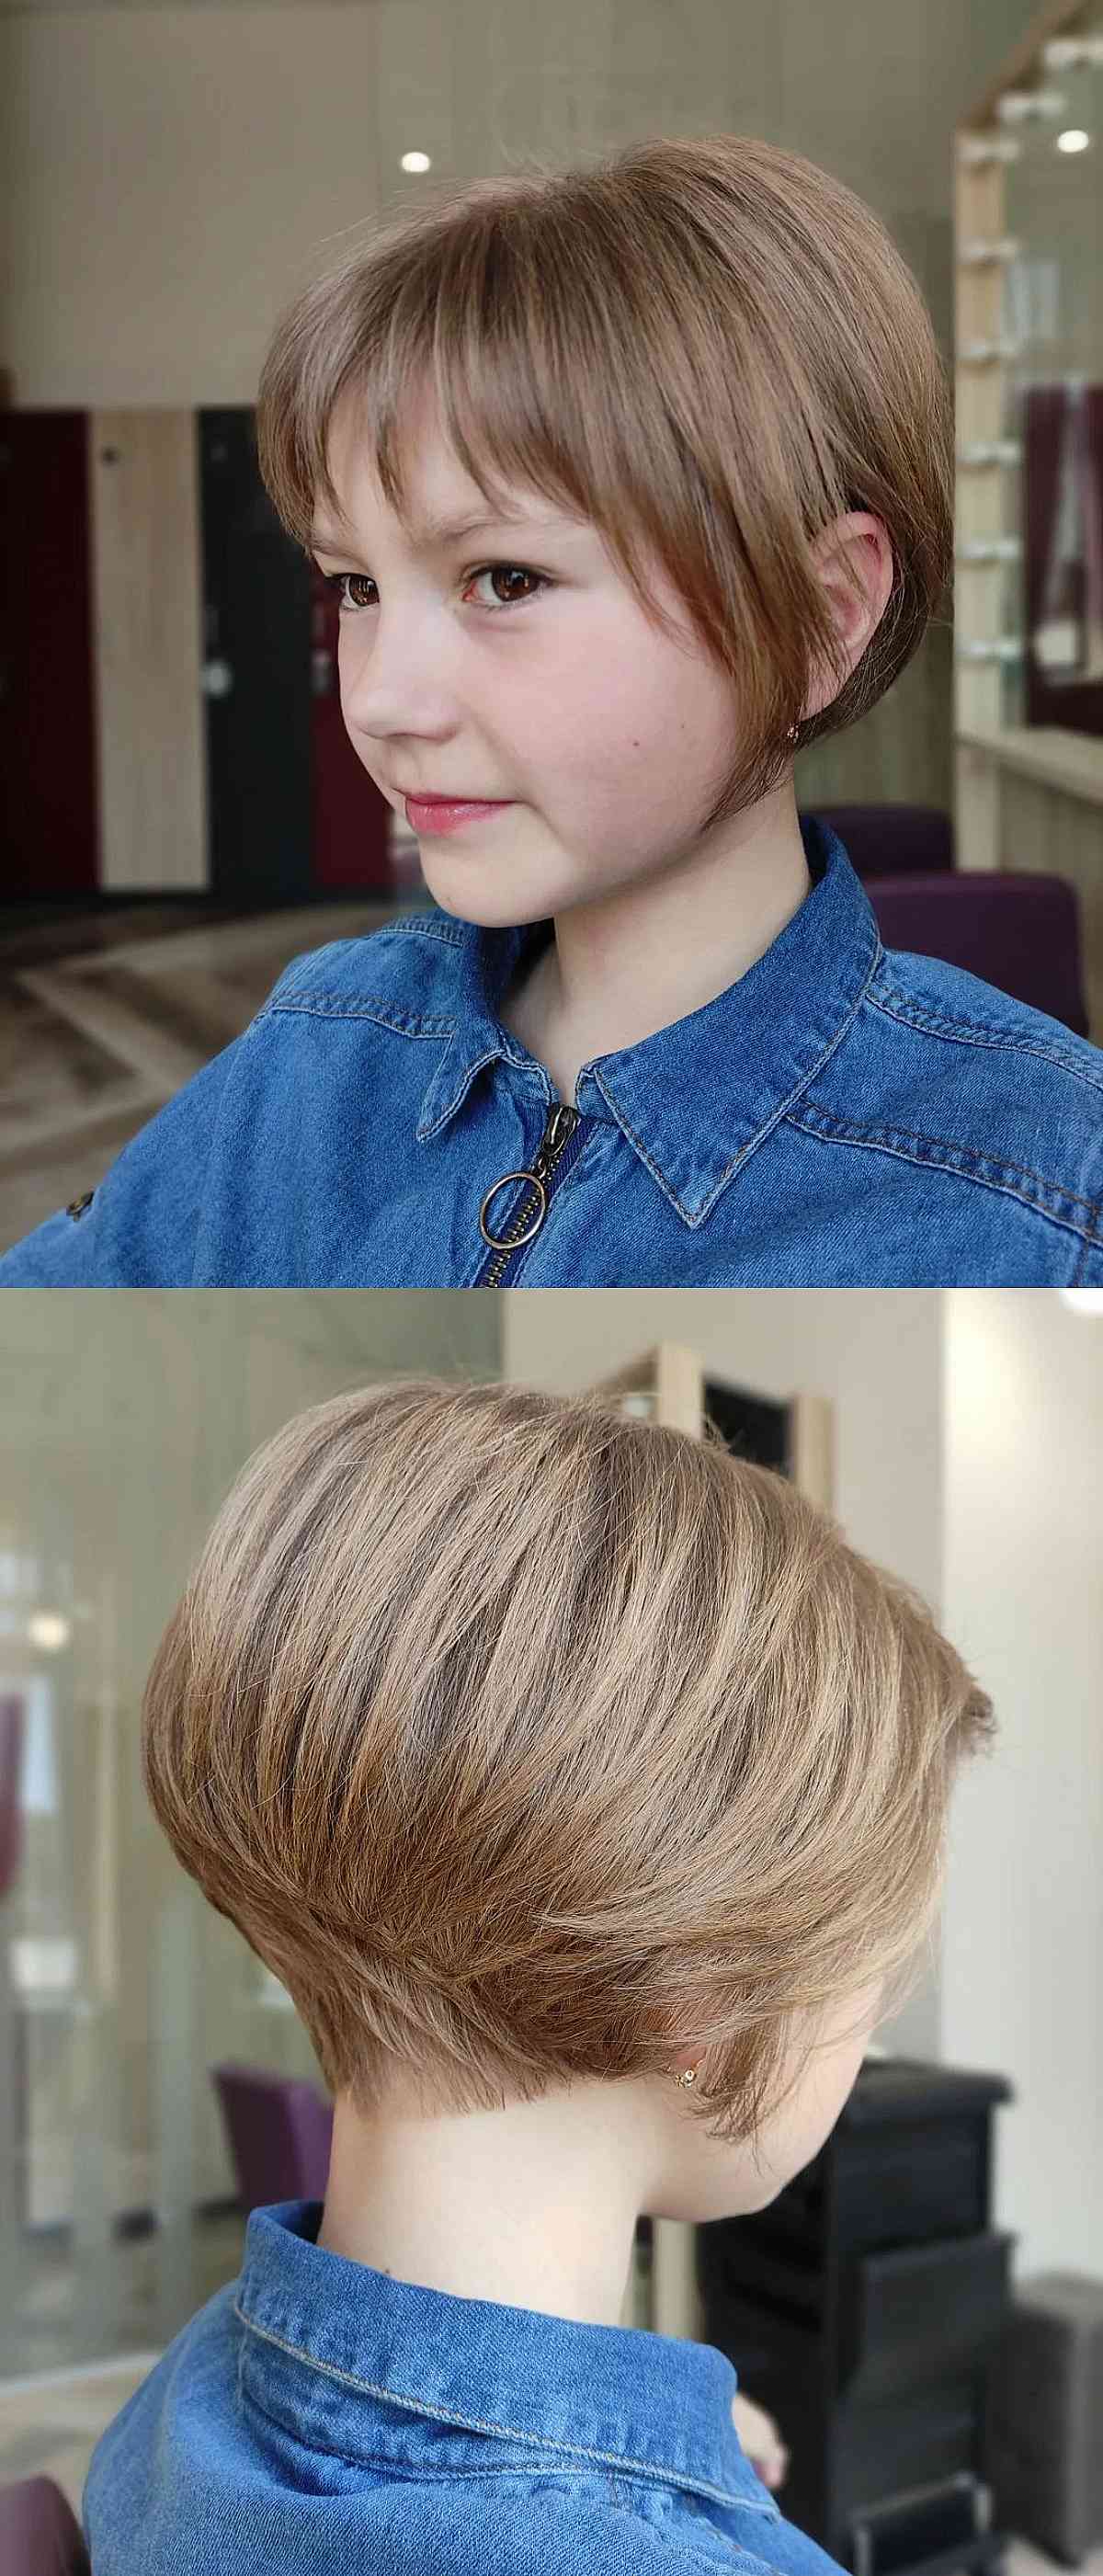 Descubra 100 image long hair cut girl - Thptnganamst.edu.vn